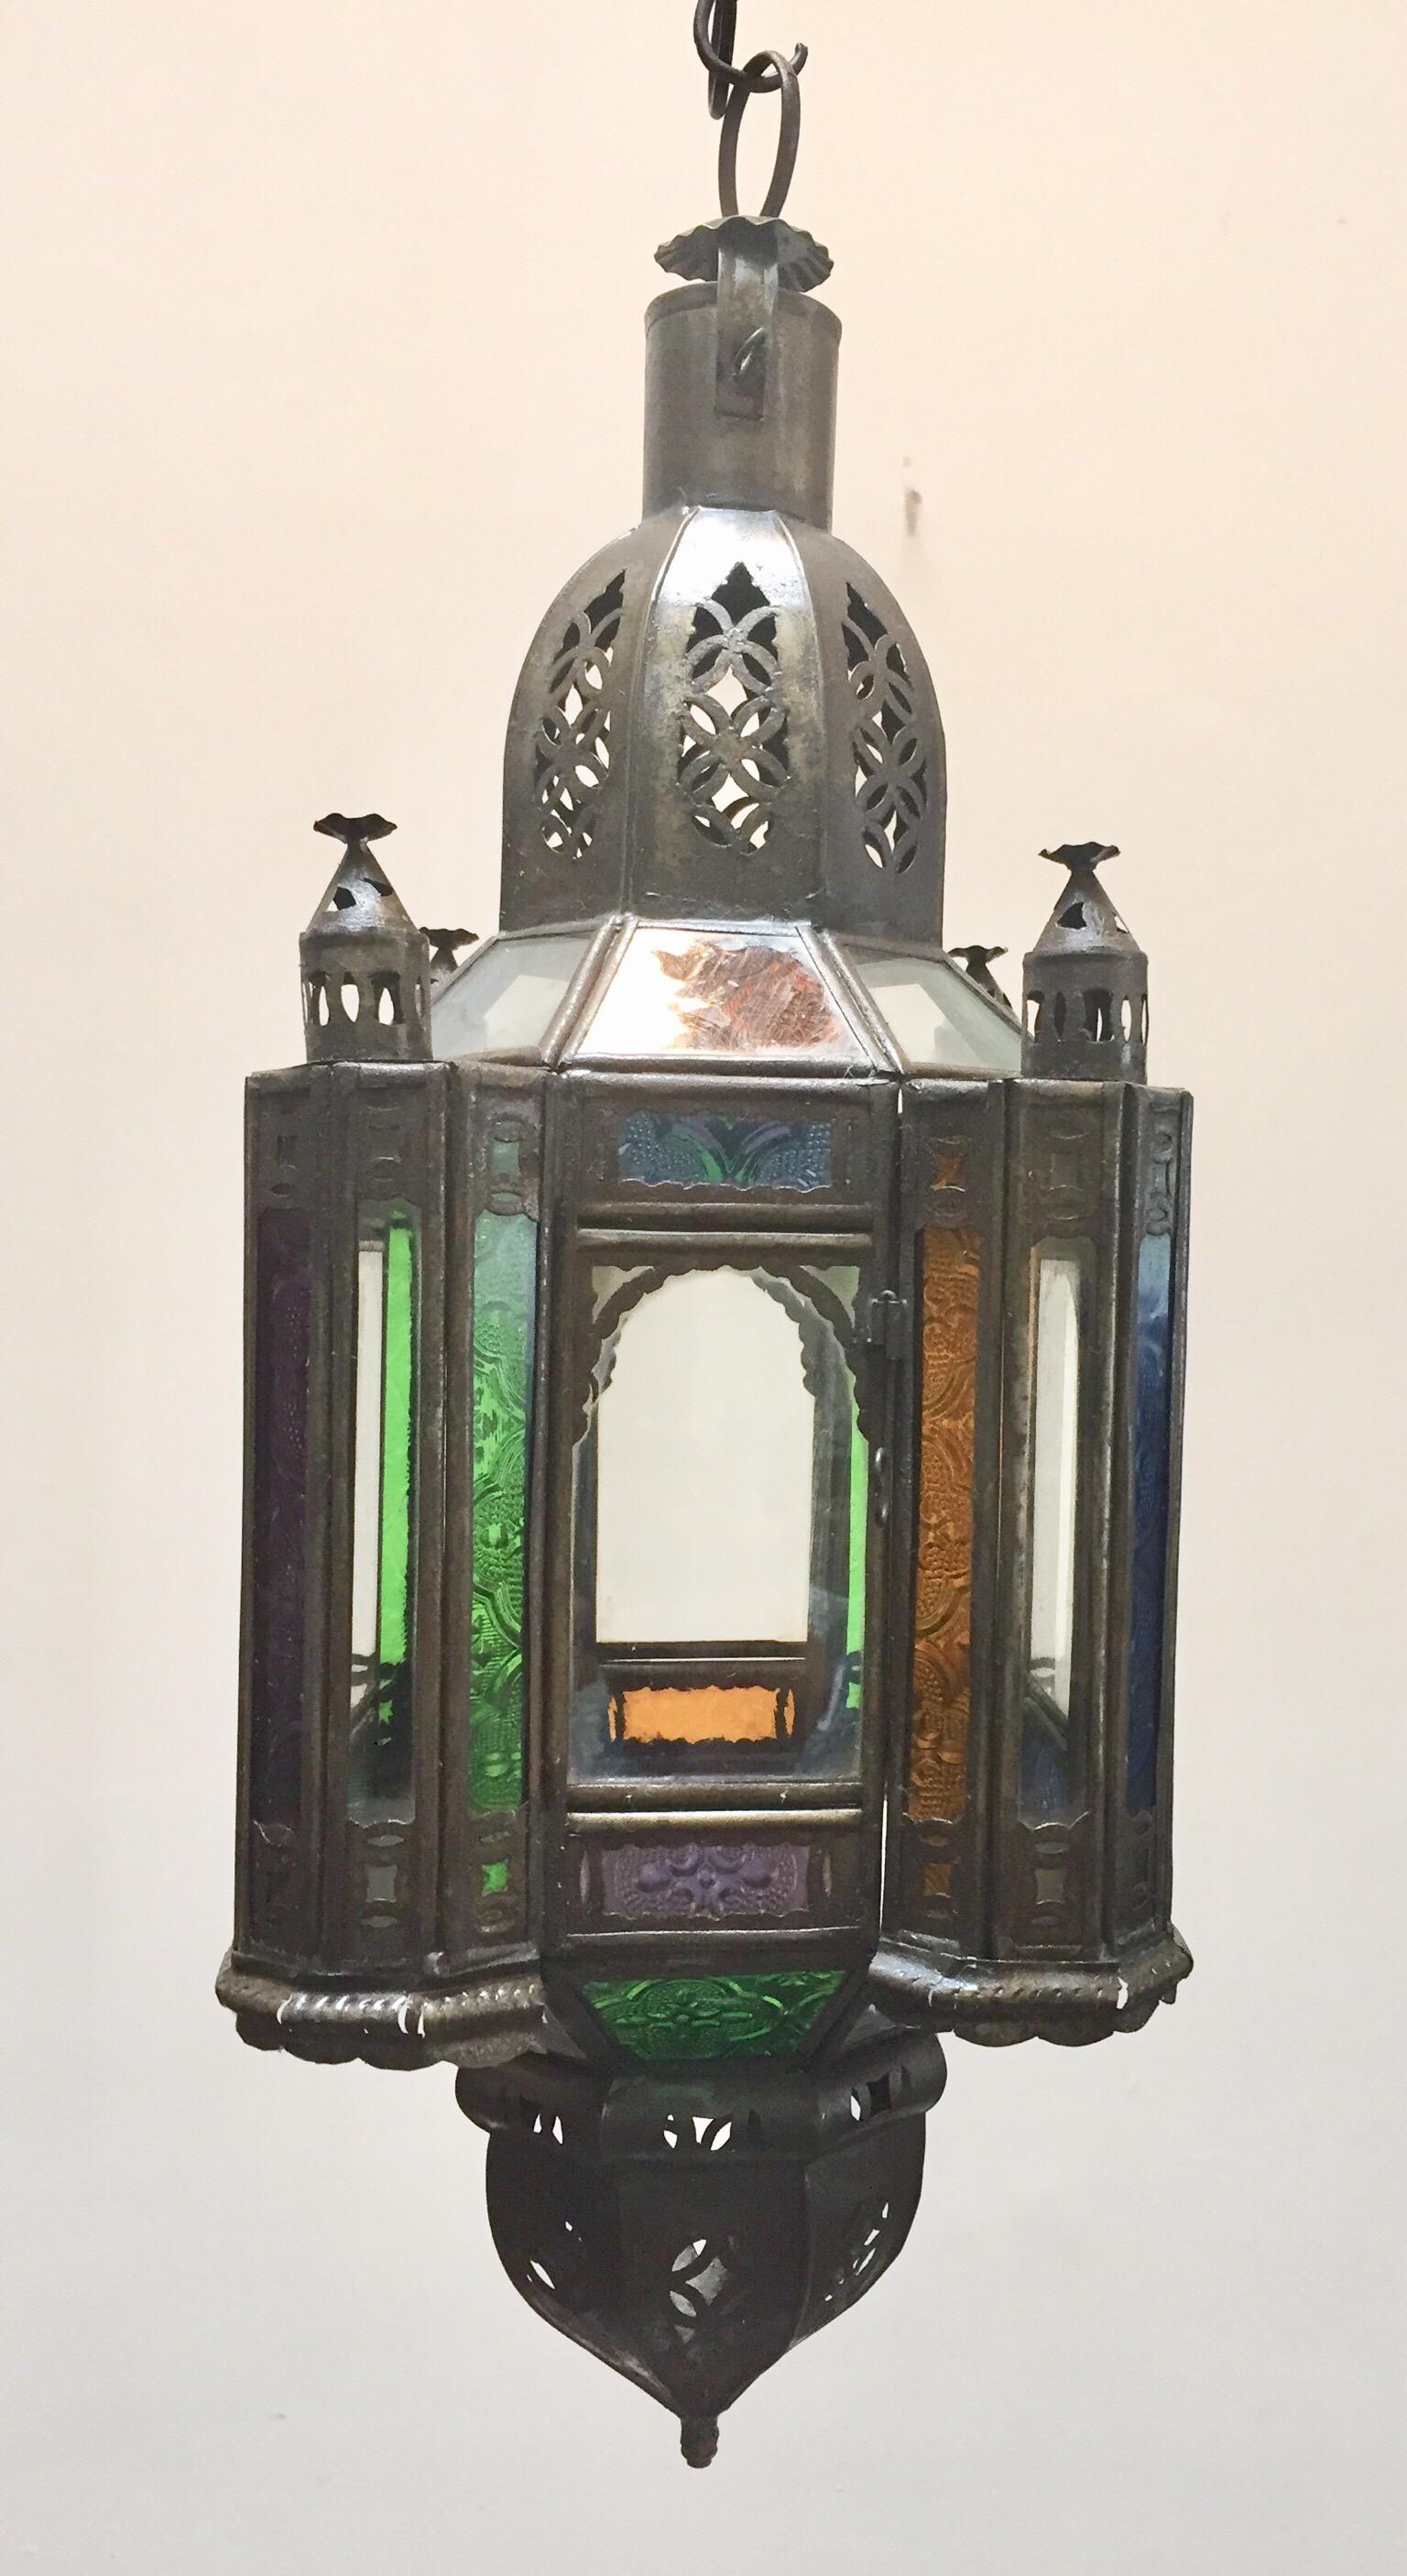 Élégante lanterne marocaine fabriquée à la main avec du verre moulé multicolore et du métal avec une finition en bronze antique.
Fabriqué à la main avec du petit verre taillé et des motifs mauresques en métal filigrané.
Pour une utilisation à